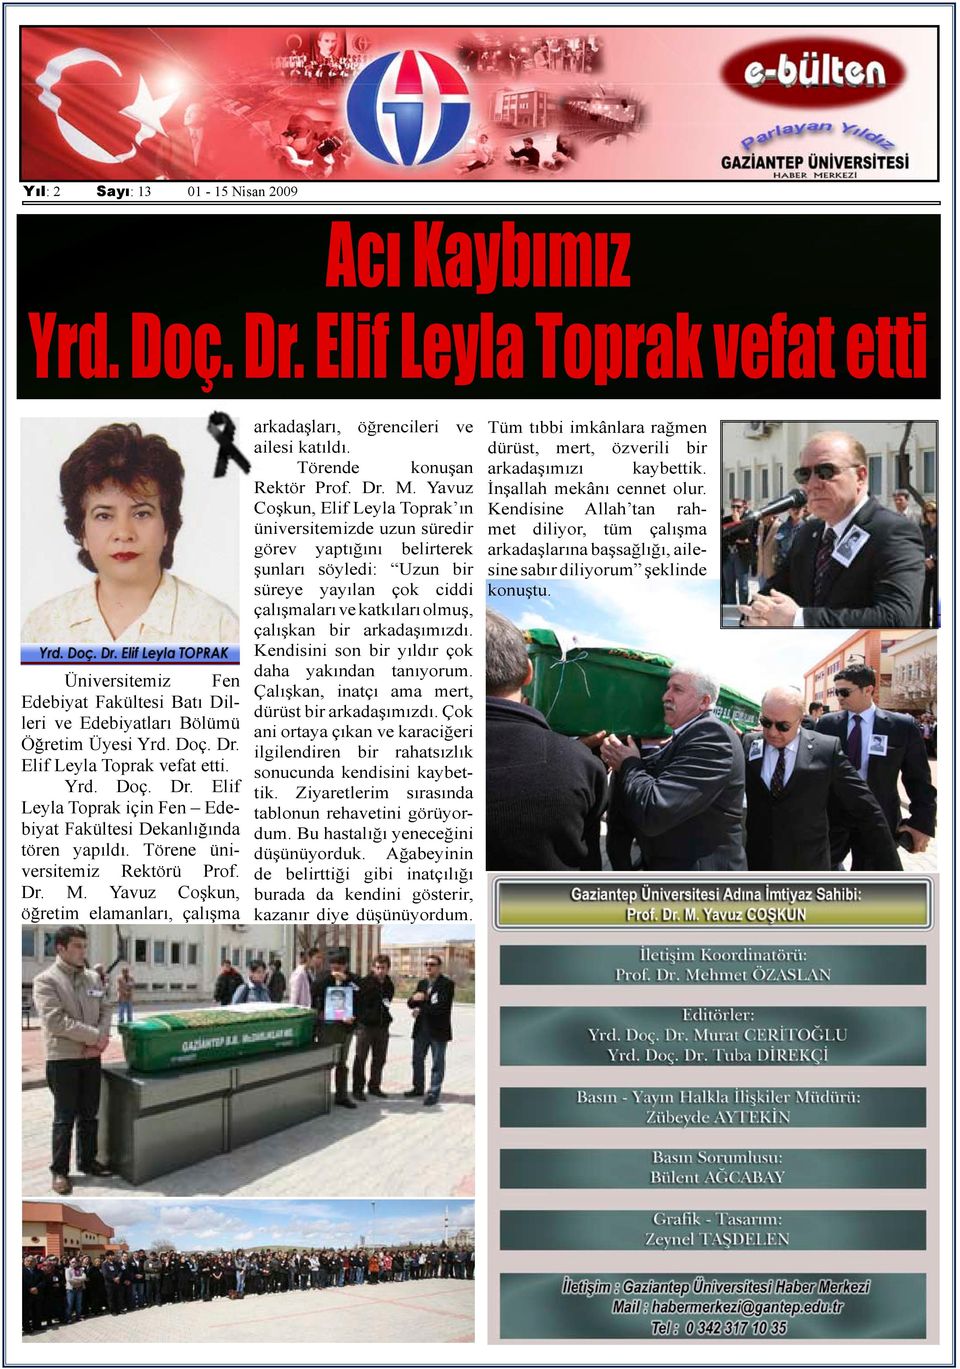 Yavuz Coşkun, öğretim elamanları, çalışma arkadaşları, öğrencileri ve ailesi katıldı. Törende konuşan Rektör Prof. Dr. M.